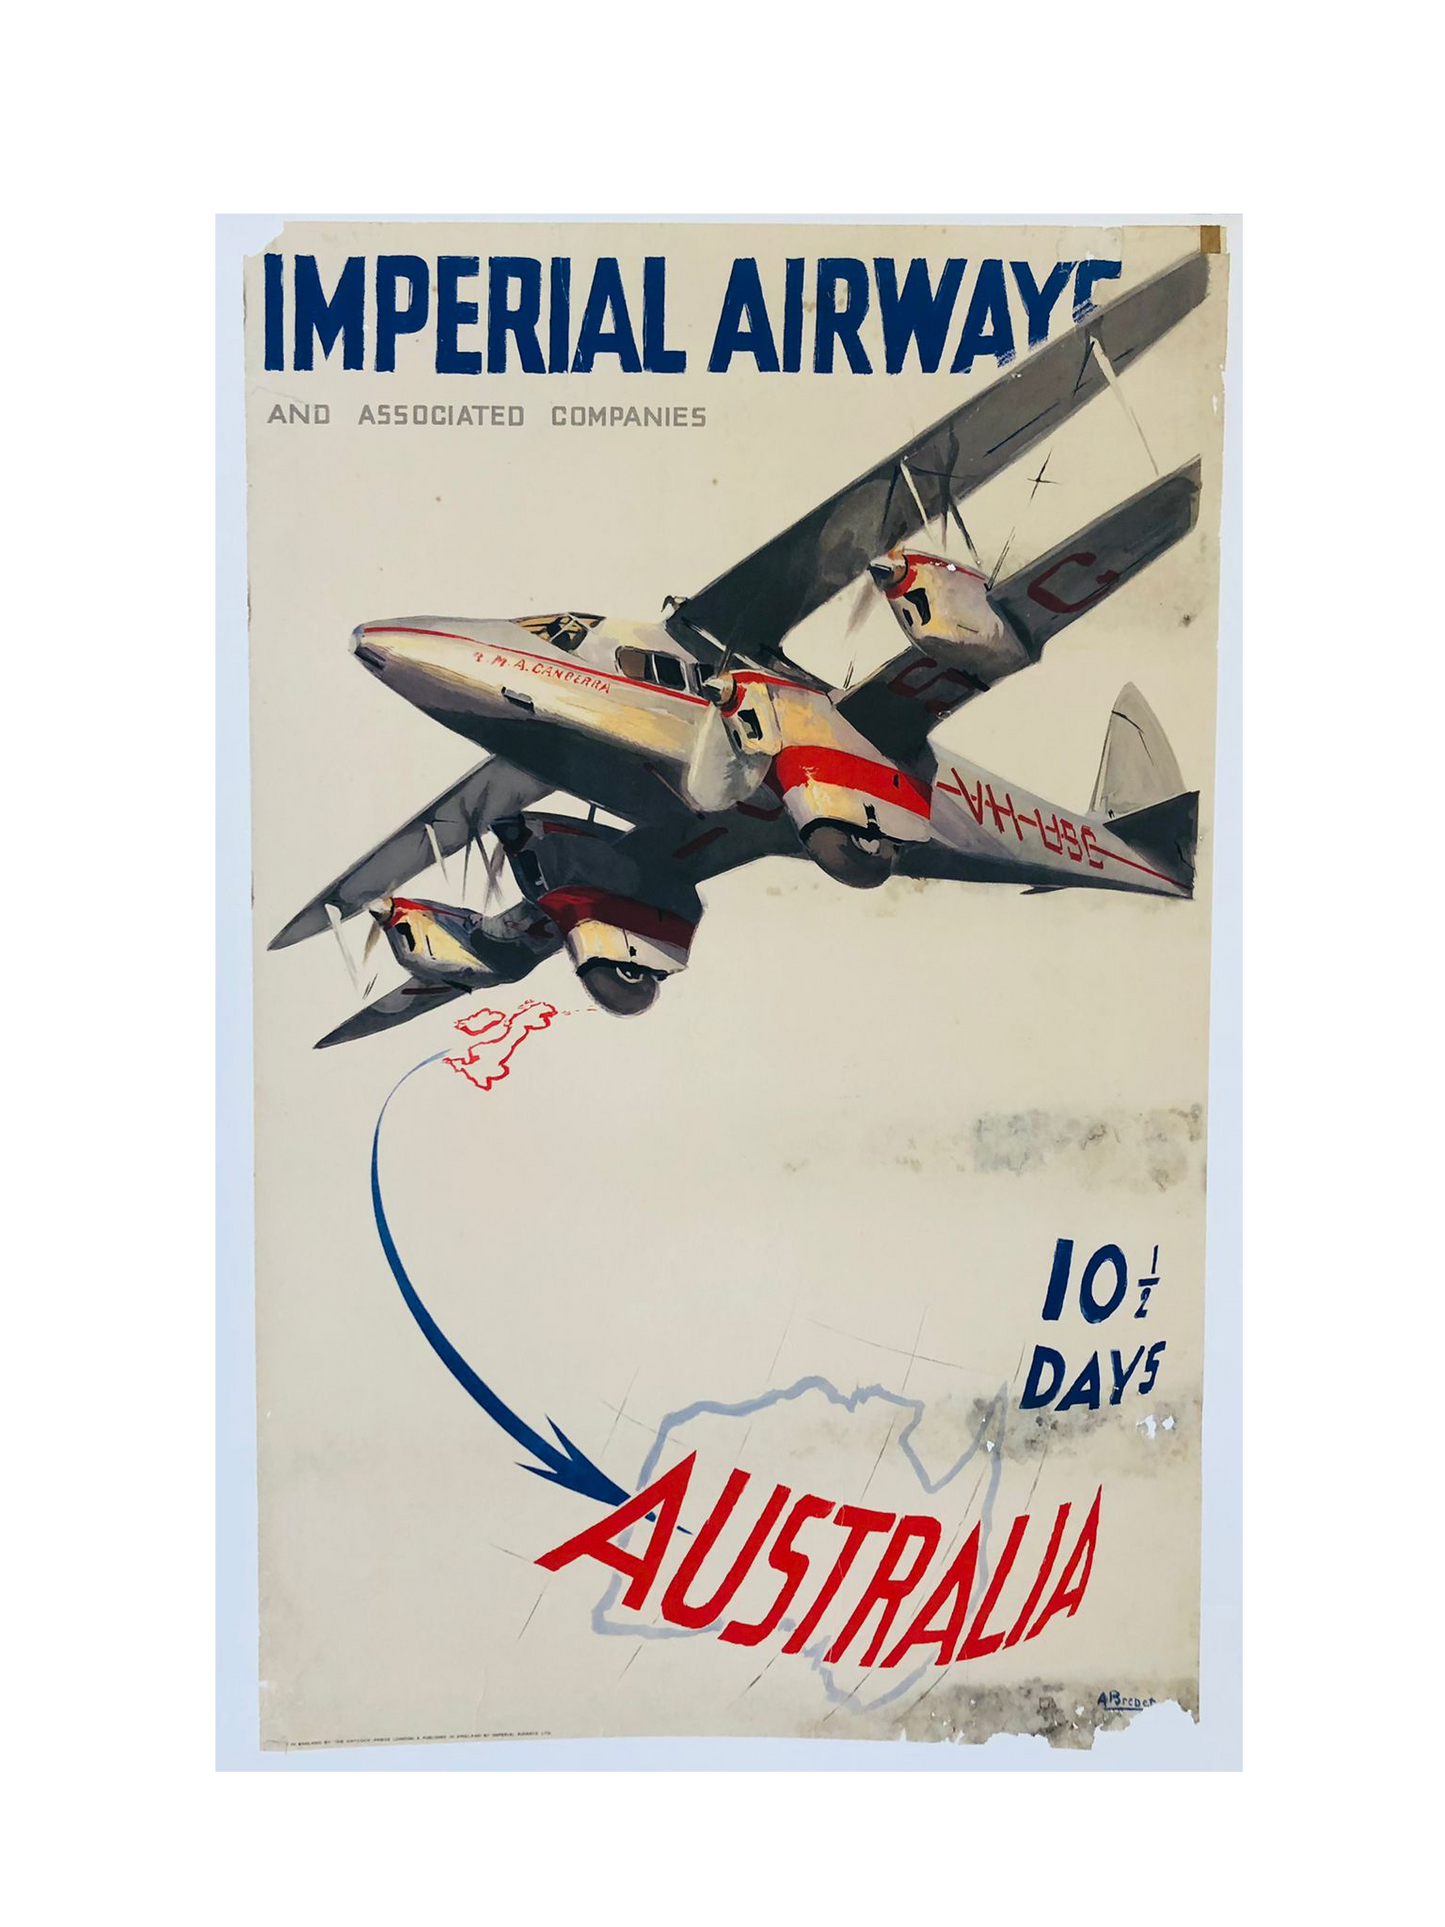 Imperial airways